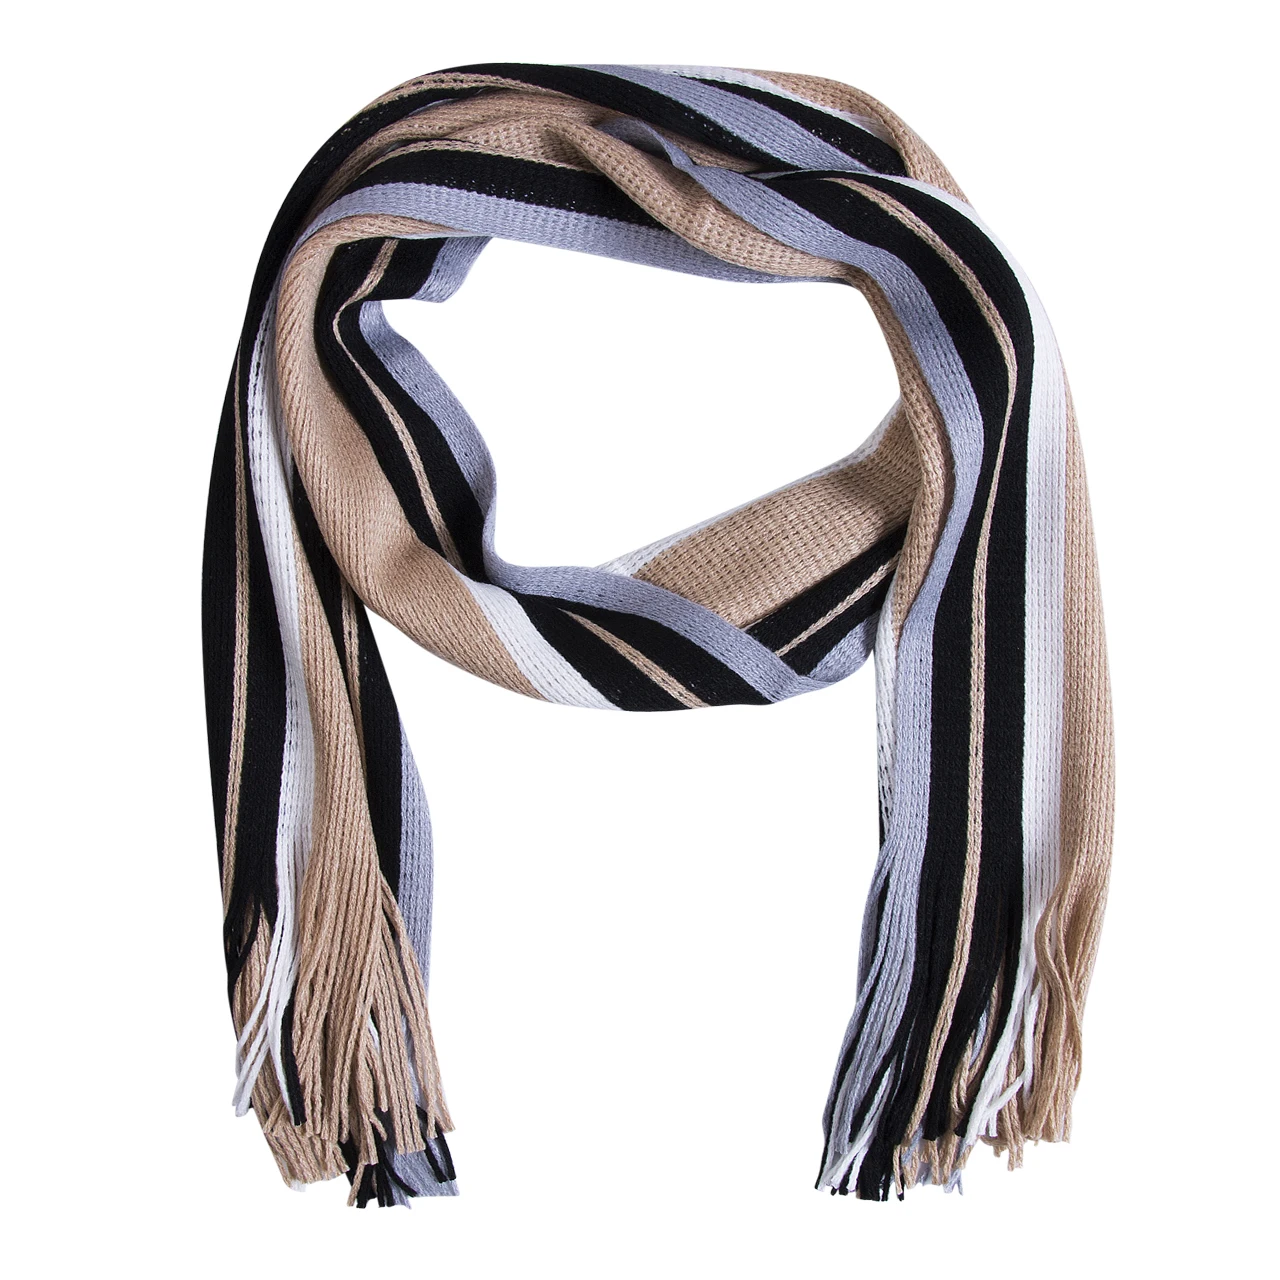 Зимний дизайнерский шарф мужской полосатый хлопковый шарф мужской бренд Шаль Обертывание вязаный кашемировый шарф с кисточками